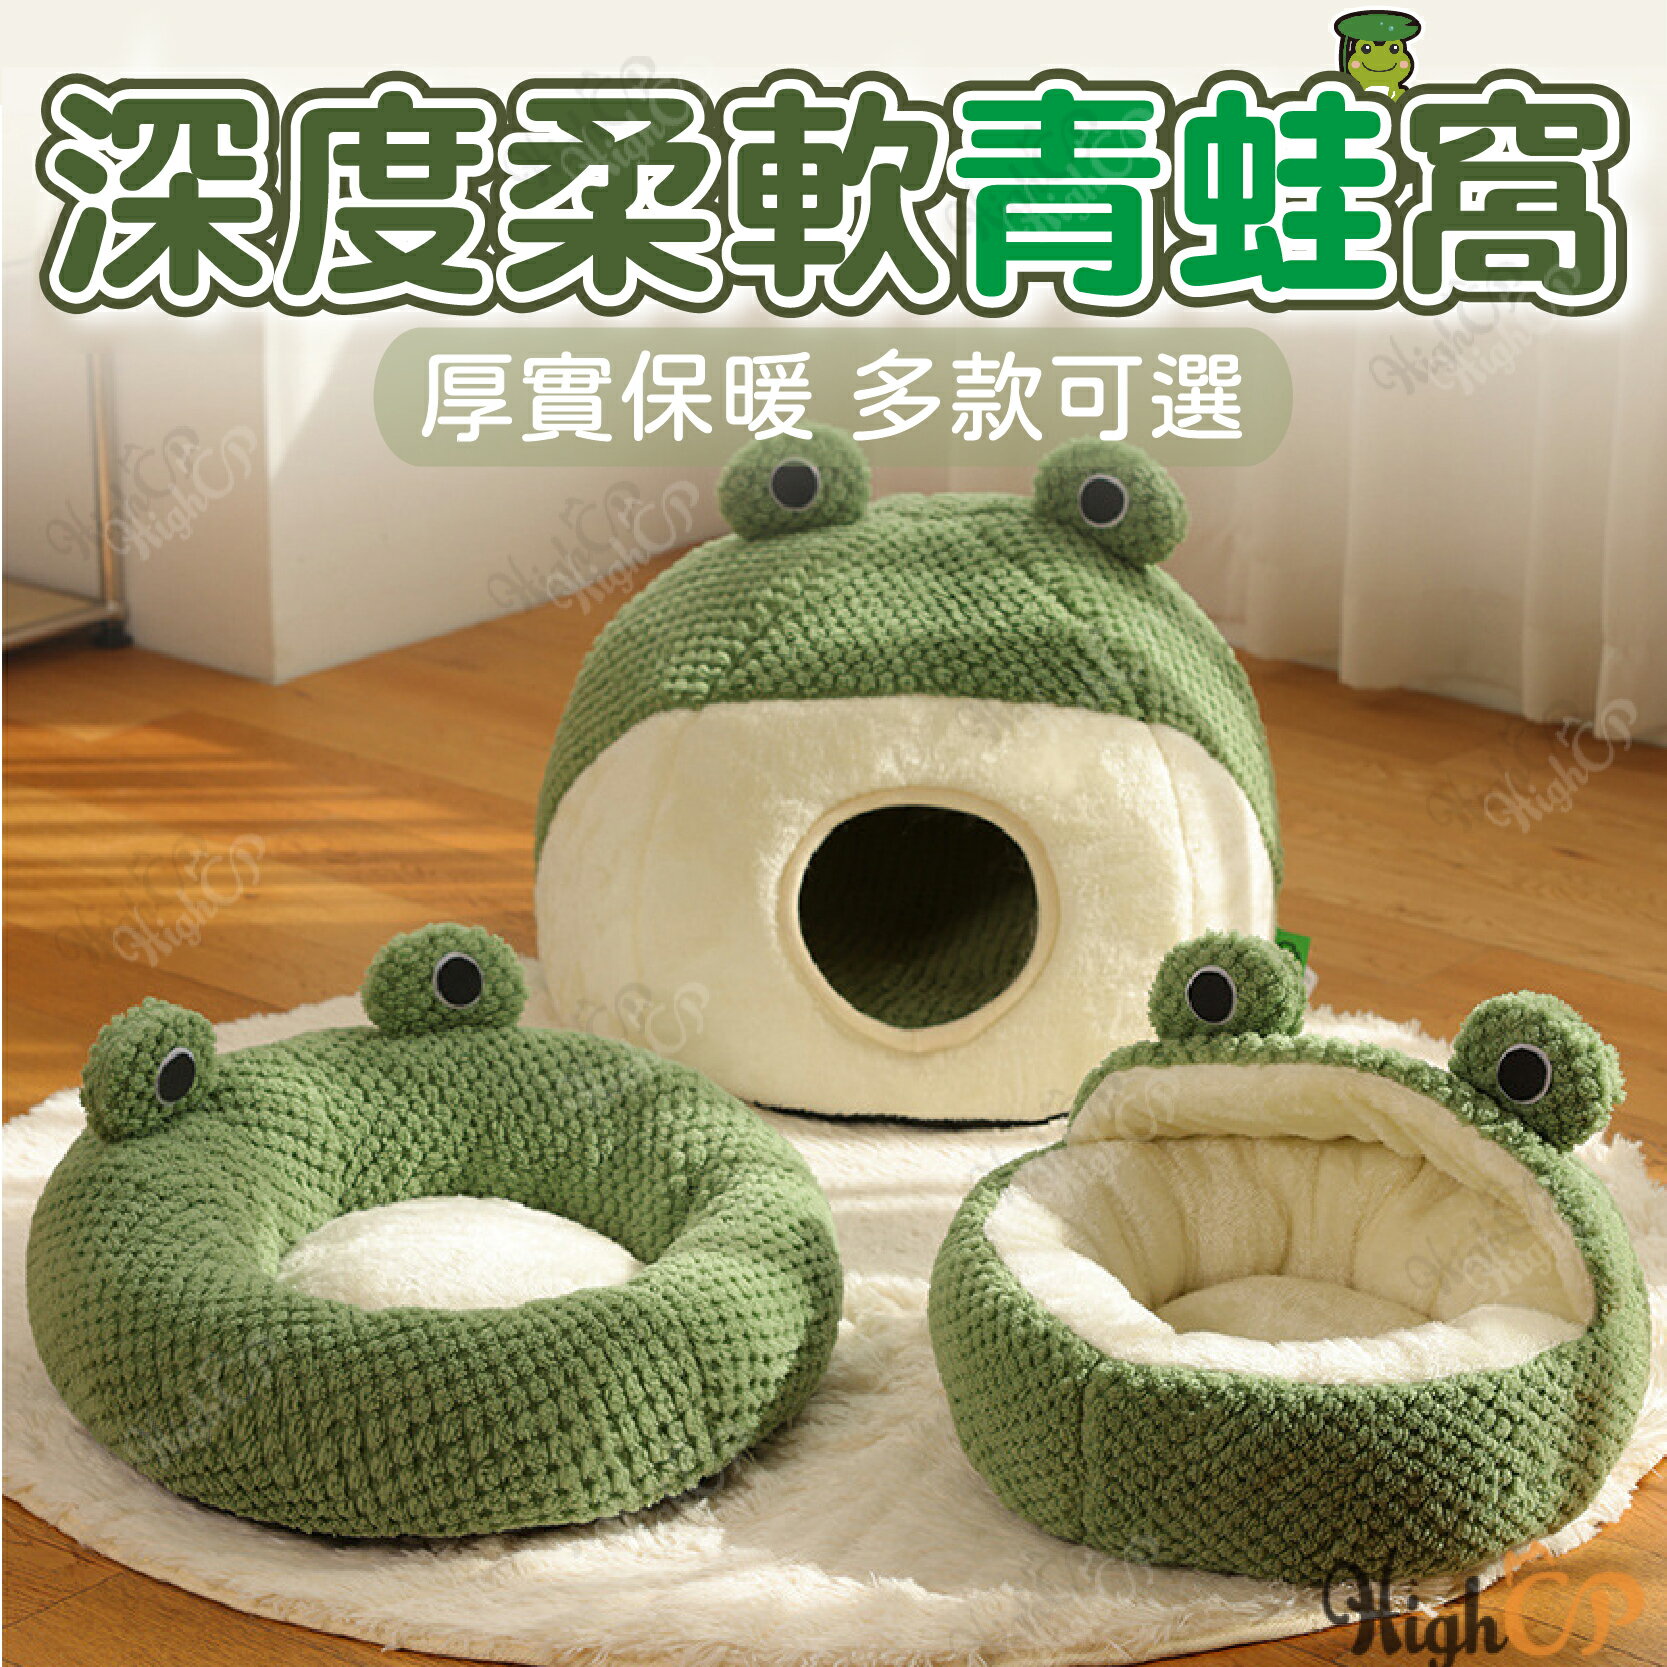 青蛙造型寵物窩 寵物窩 深度睡眠窩 青蛙窩 寵物床 貓窩 貓床 狗床 寵物睡墊 寵物墊 狗床墊【231024】